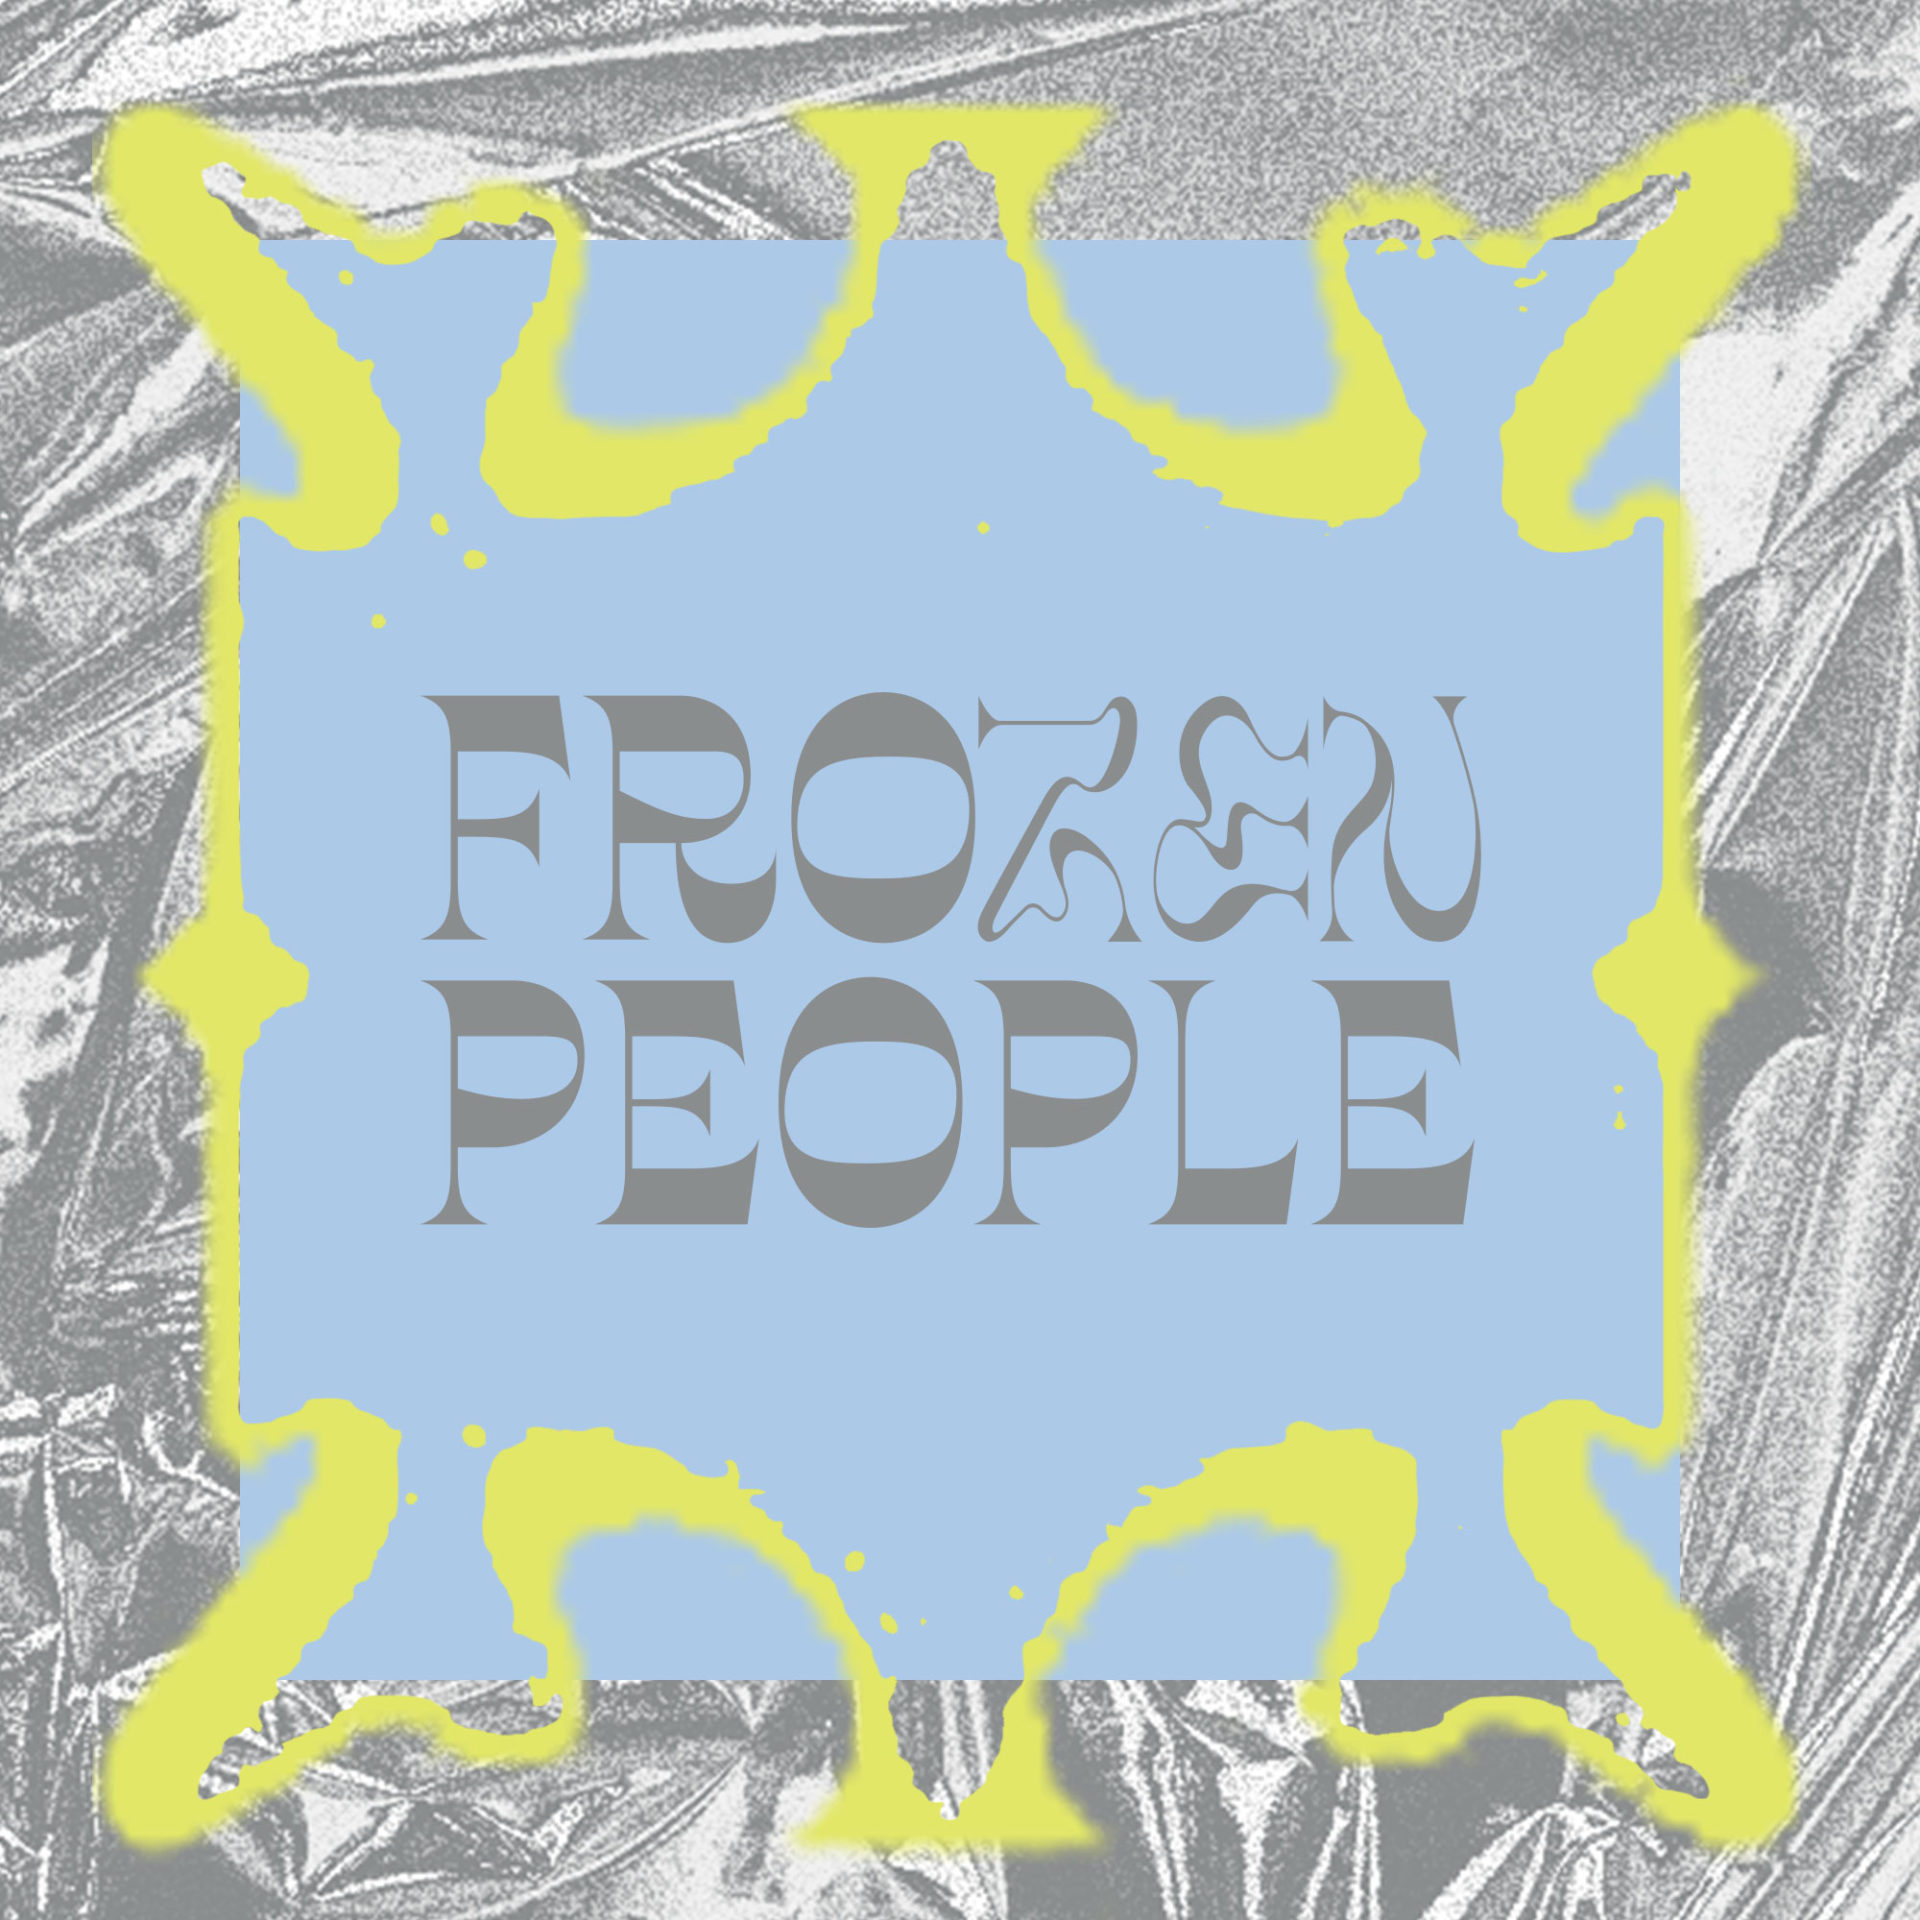 Frozen People -tapahtuman logo.